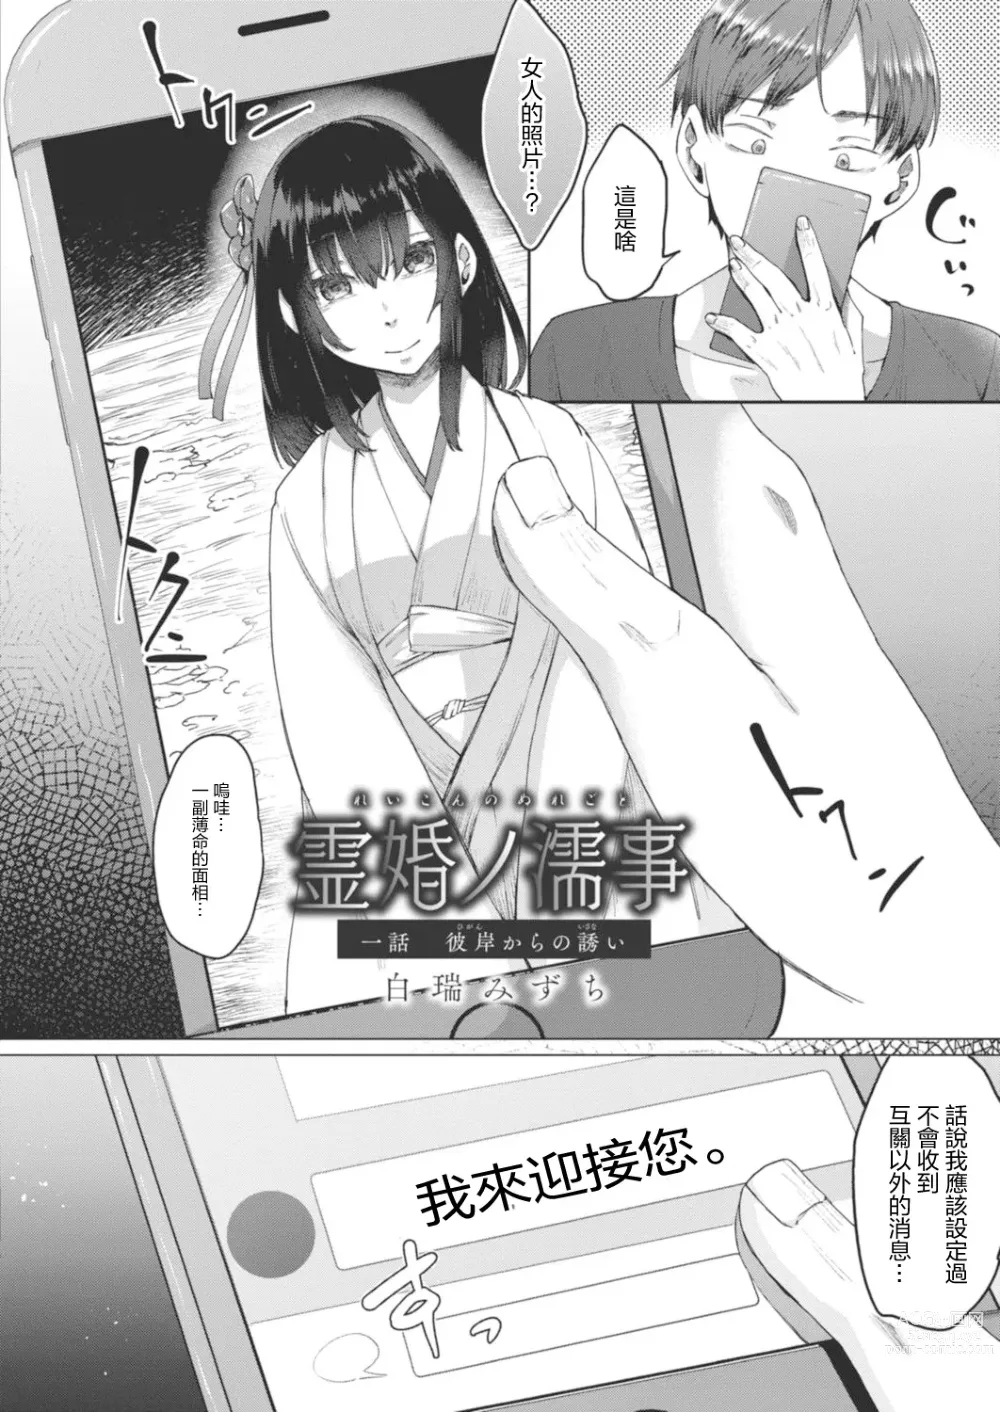 Page 2 of manga Reikon no Nuregoto Ch. 1 Higan kara no Izanai